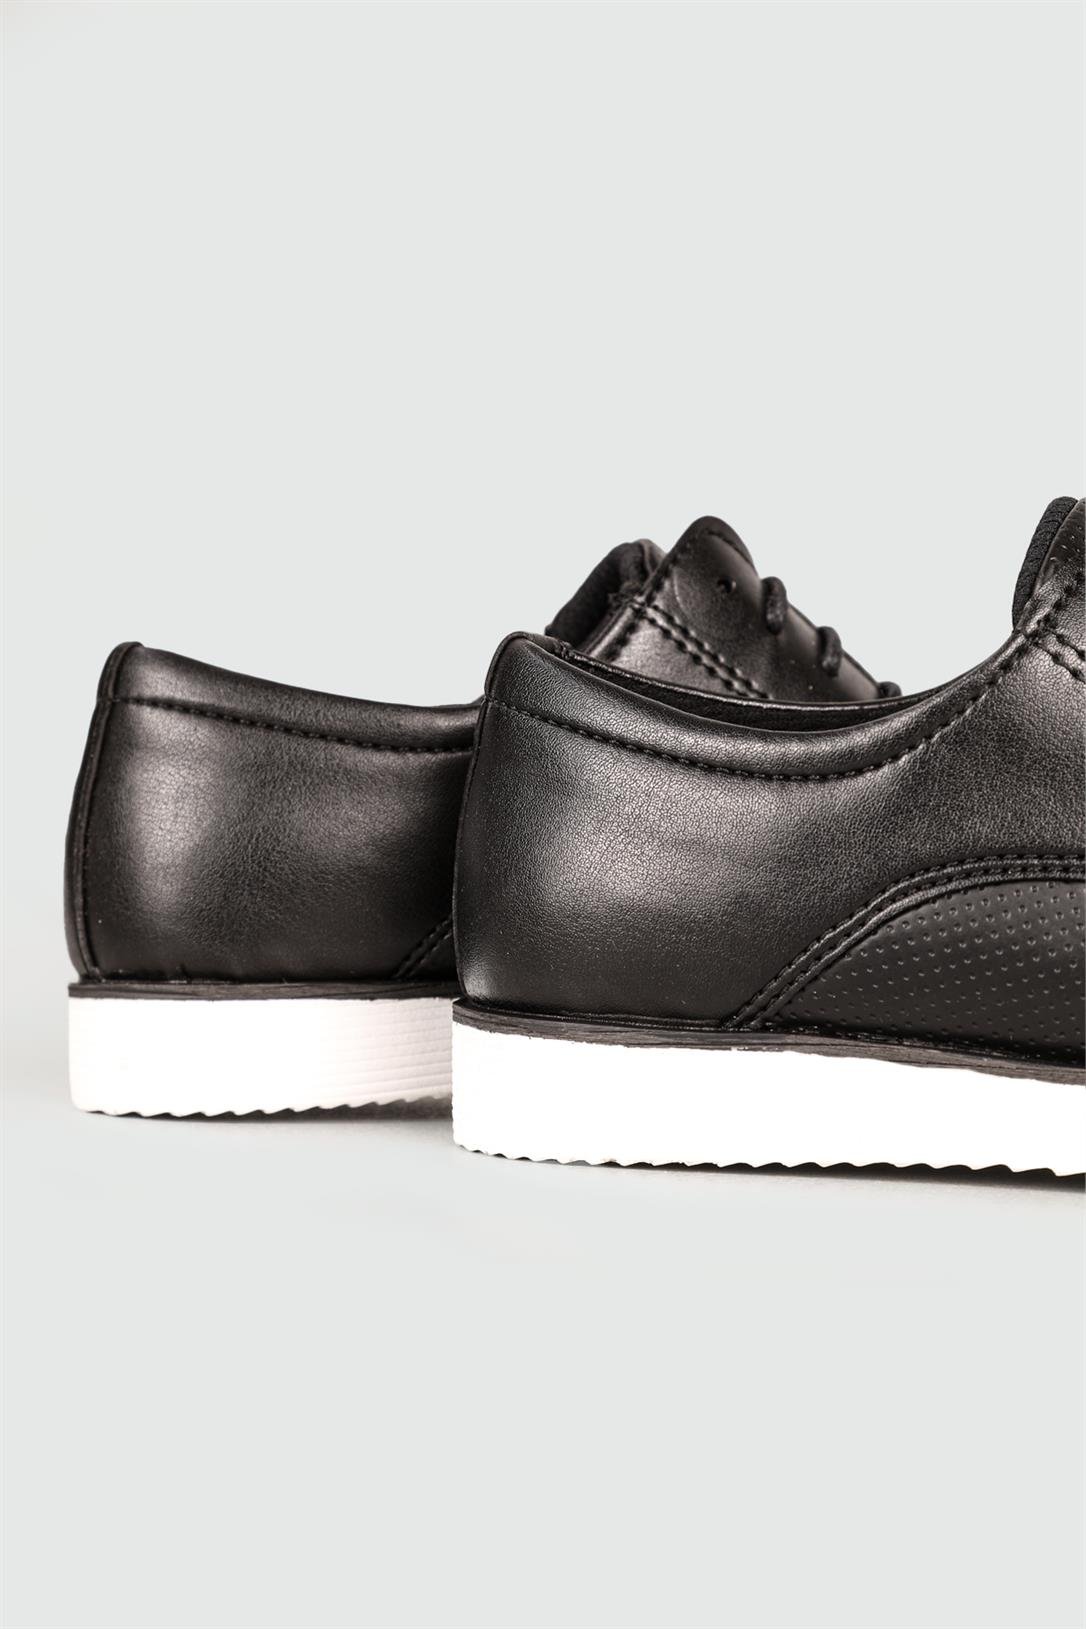 Conteyner Klasik Siyah Baskılı Beyaz Erkek Ayakkabı 681 | Ayakkabı City